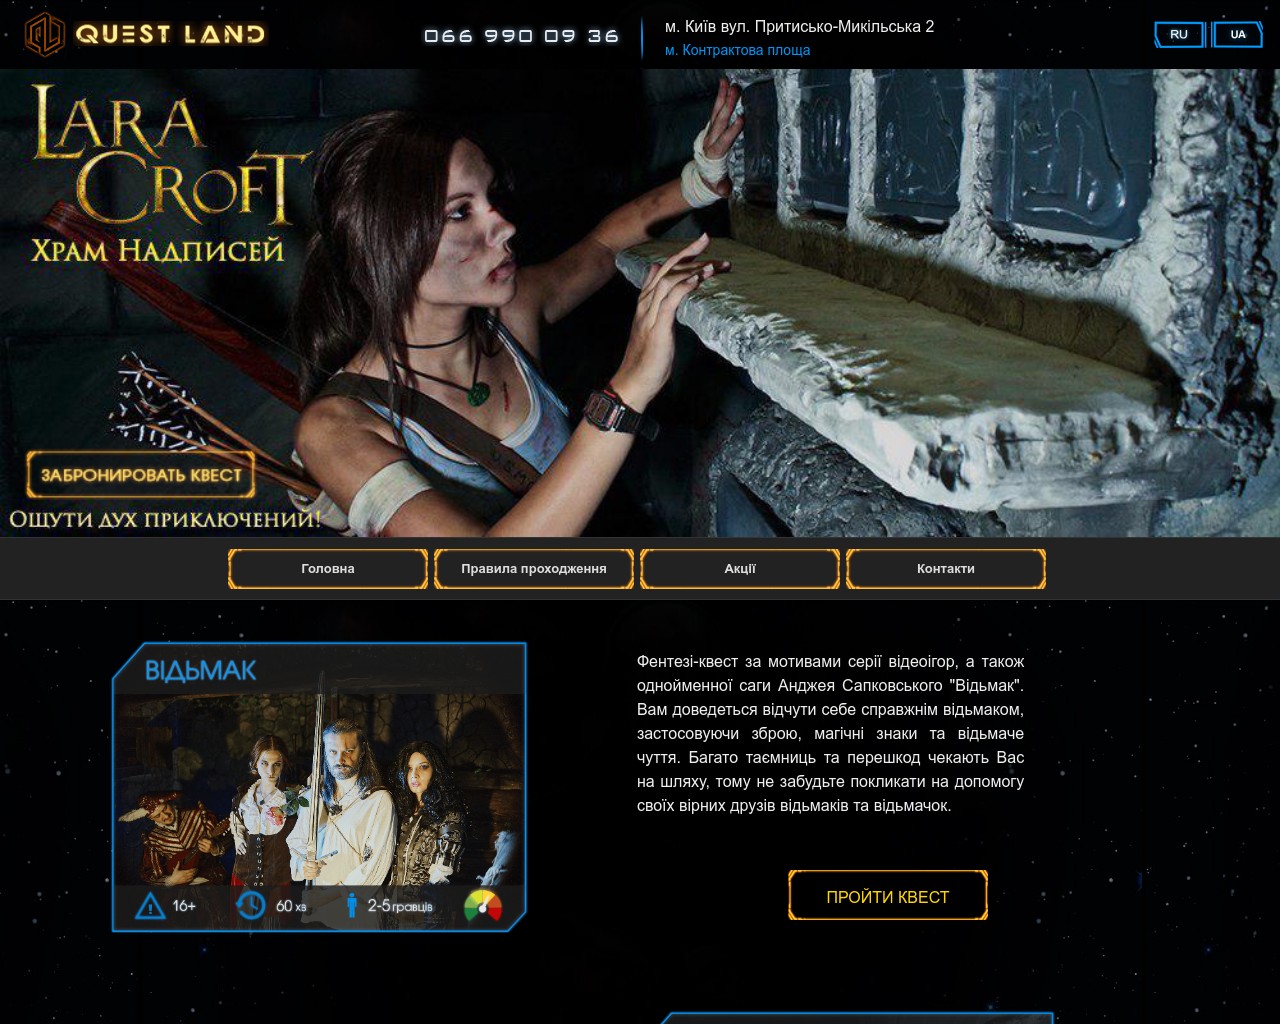 Изображение скриншота сайта - QuestLand - квест-комнаты в Киеве по мотивам лучших компьютерных игр